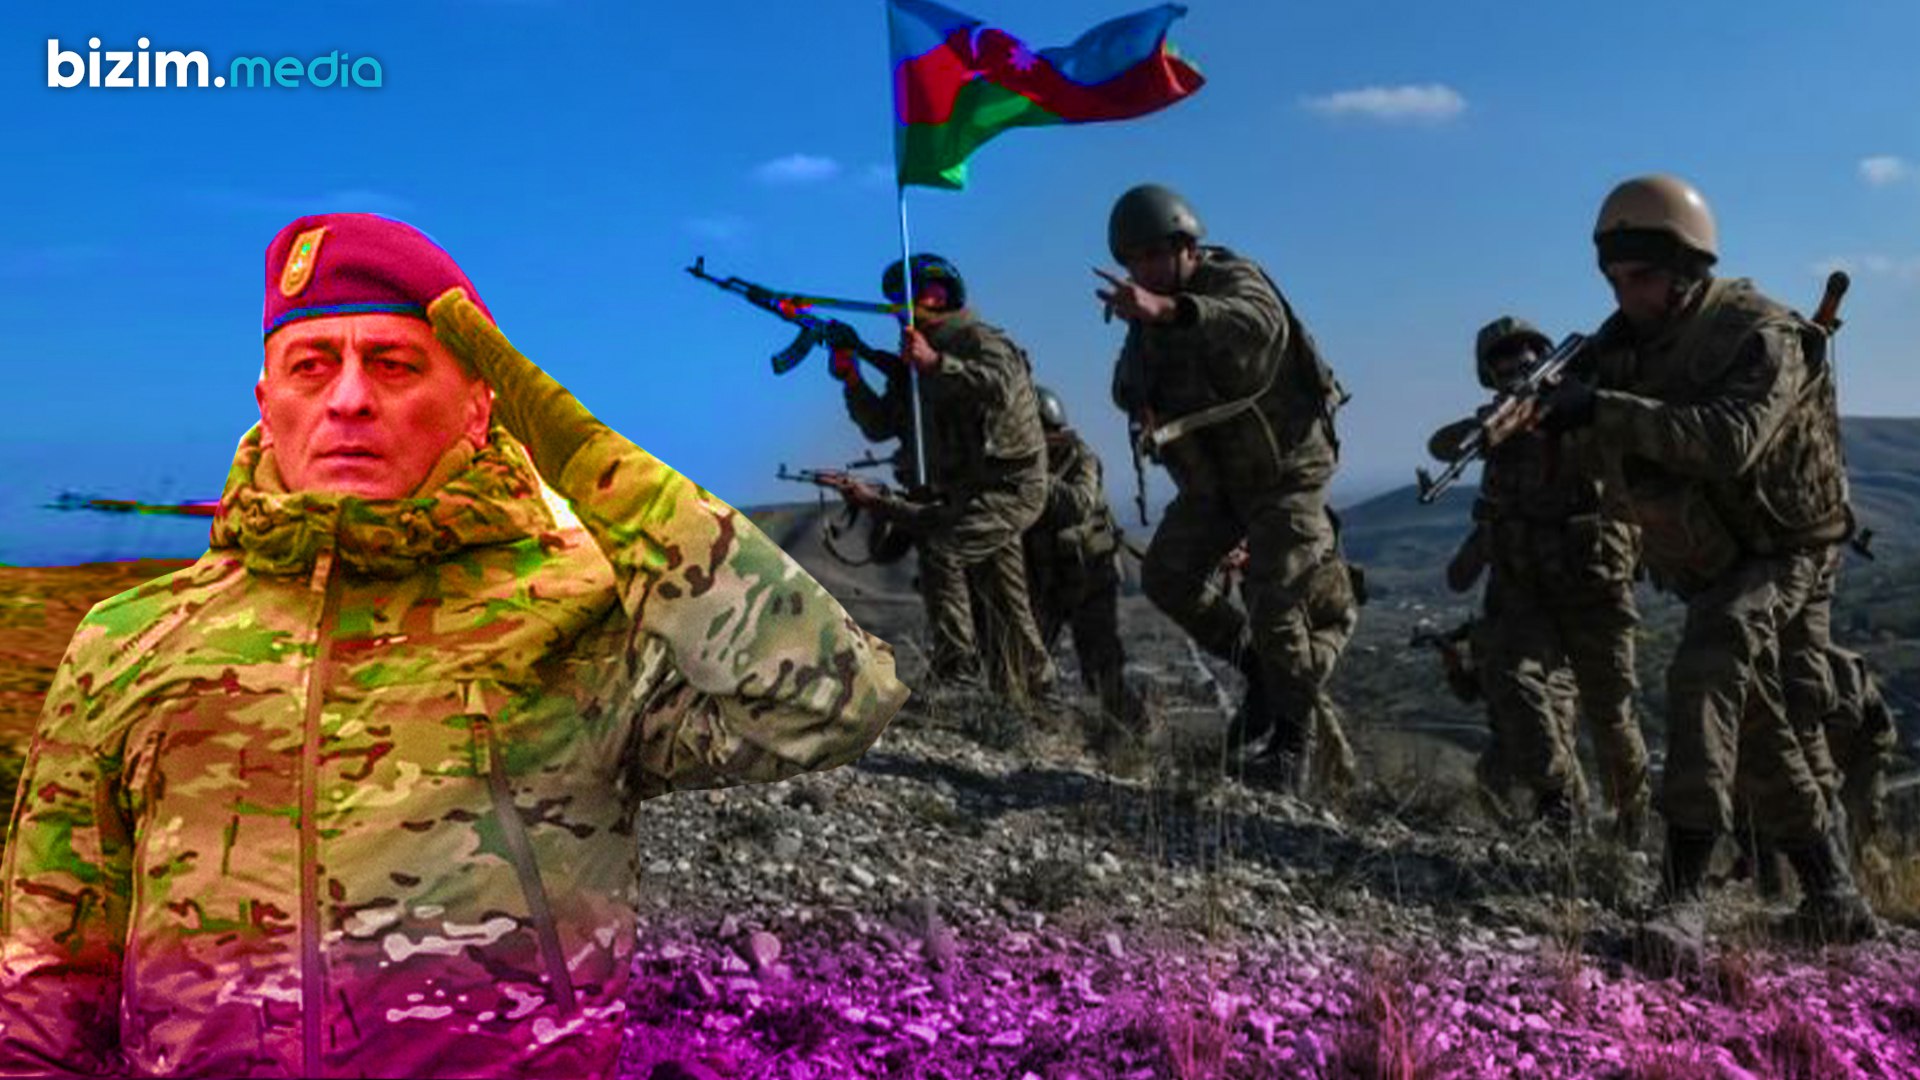 “Ordumuz Hikmət Mirzəyevlə Güney Azərbaycana çox yaxındır” – Təlimlərimizin İranda yaratdığı QORXU